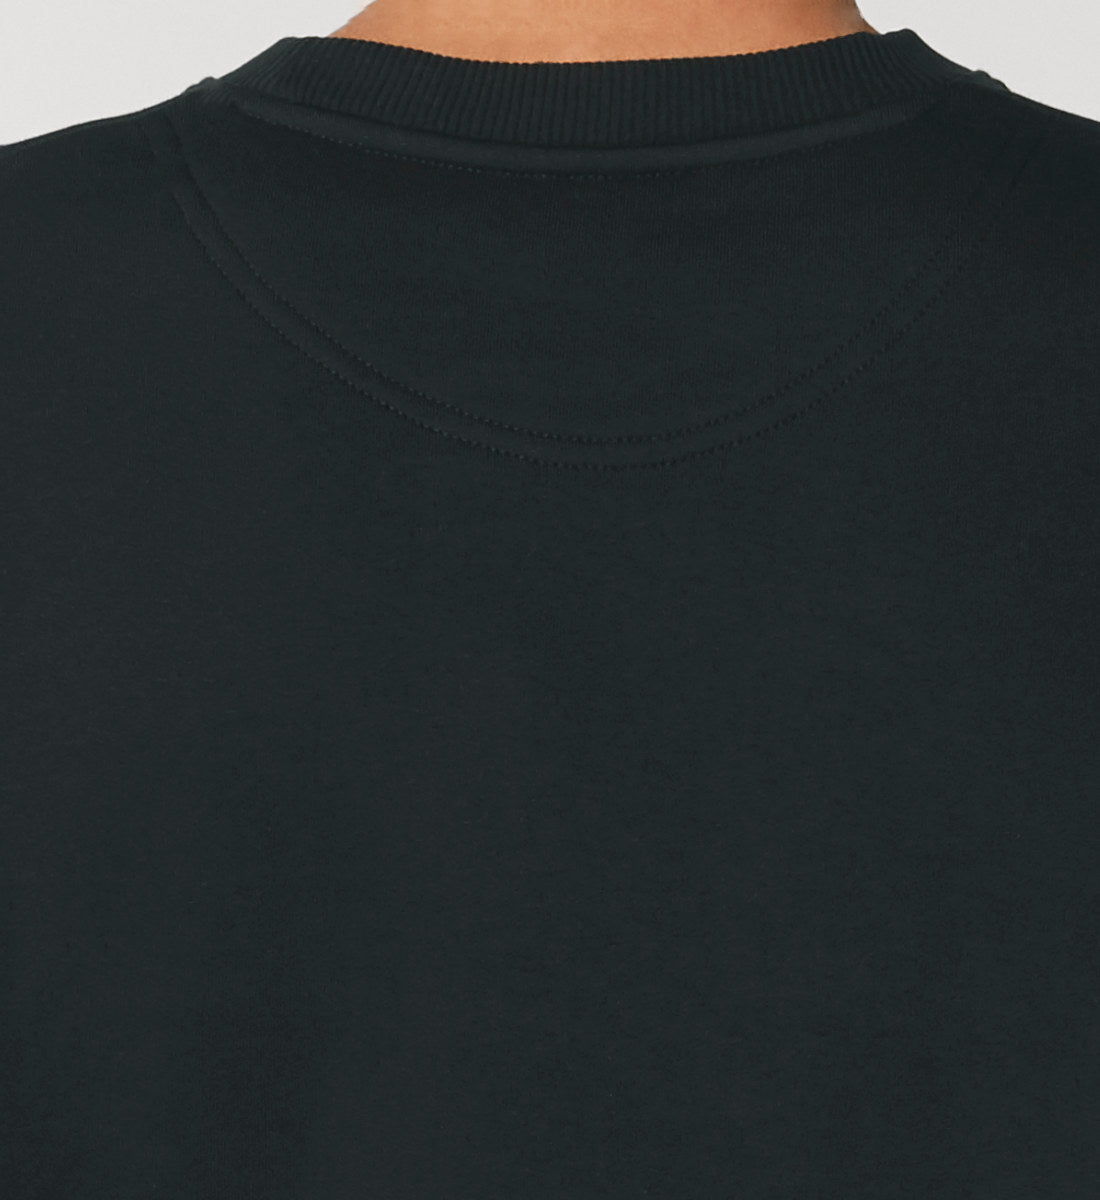 Schwarzes Sweatshirt Unisex für Frauen und Männer bedruckt mit dem Design der Roger Rockawoo Kollektion Skateboard shredding Culture Community